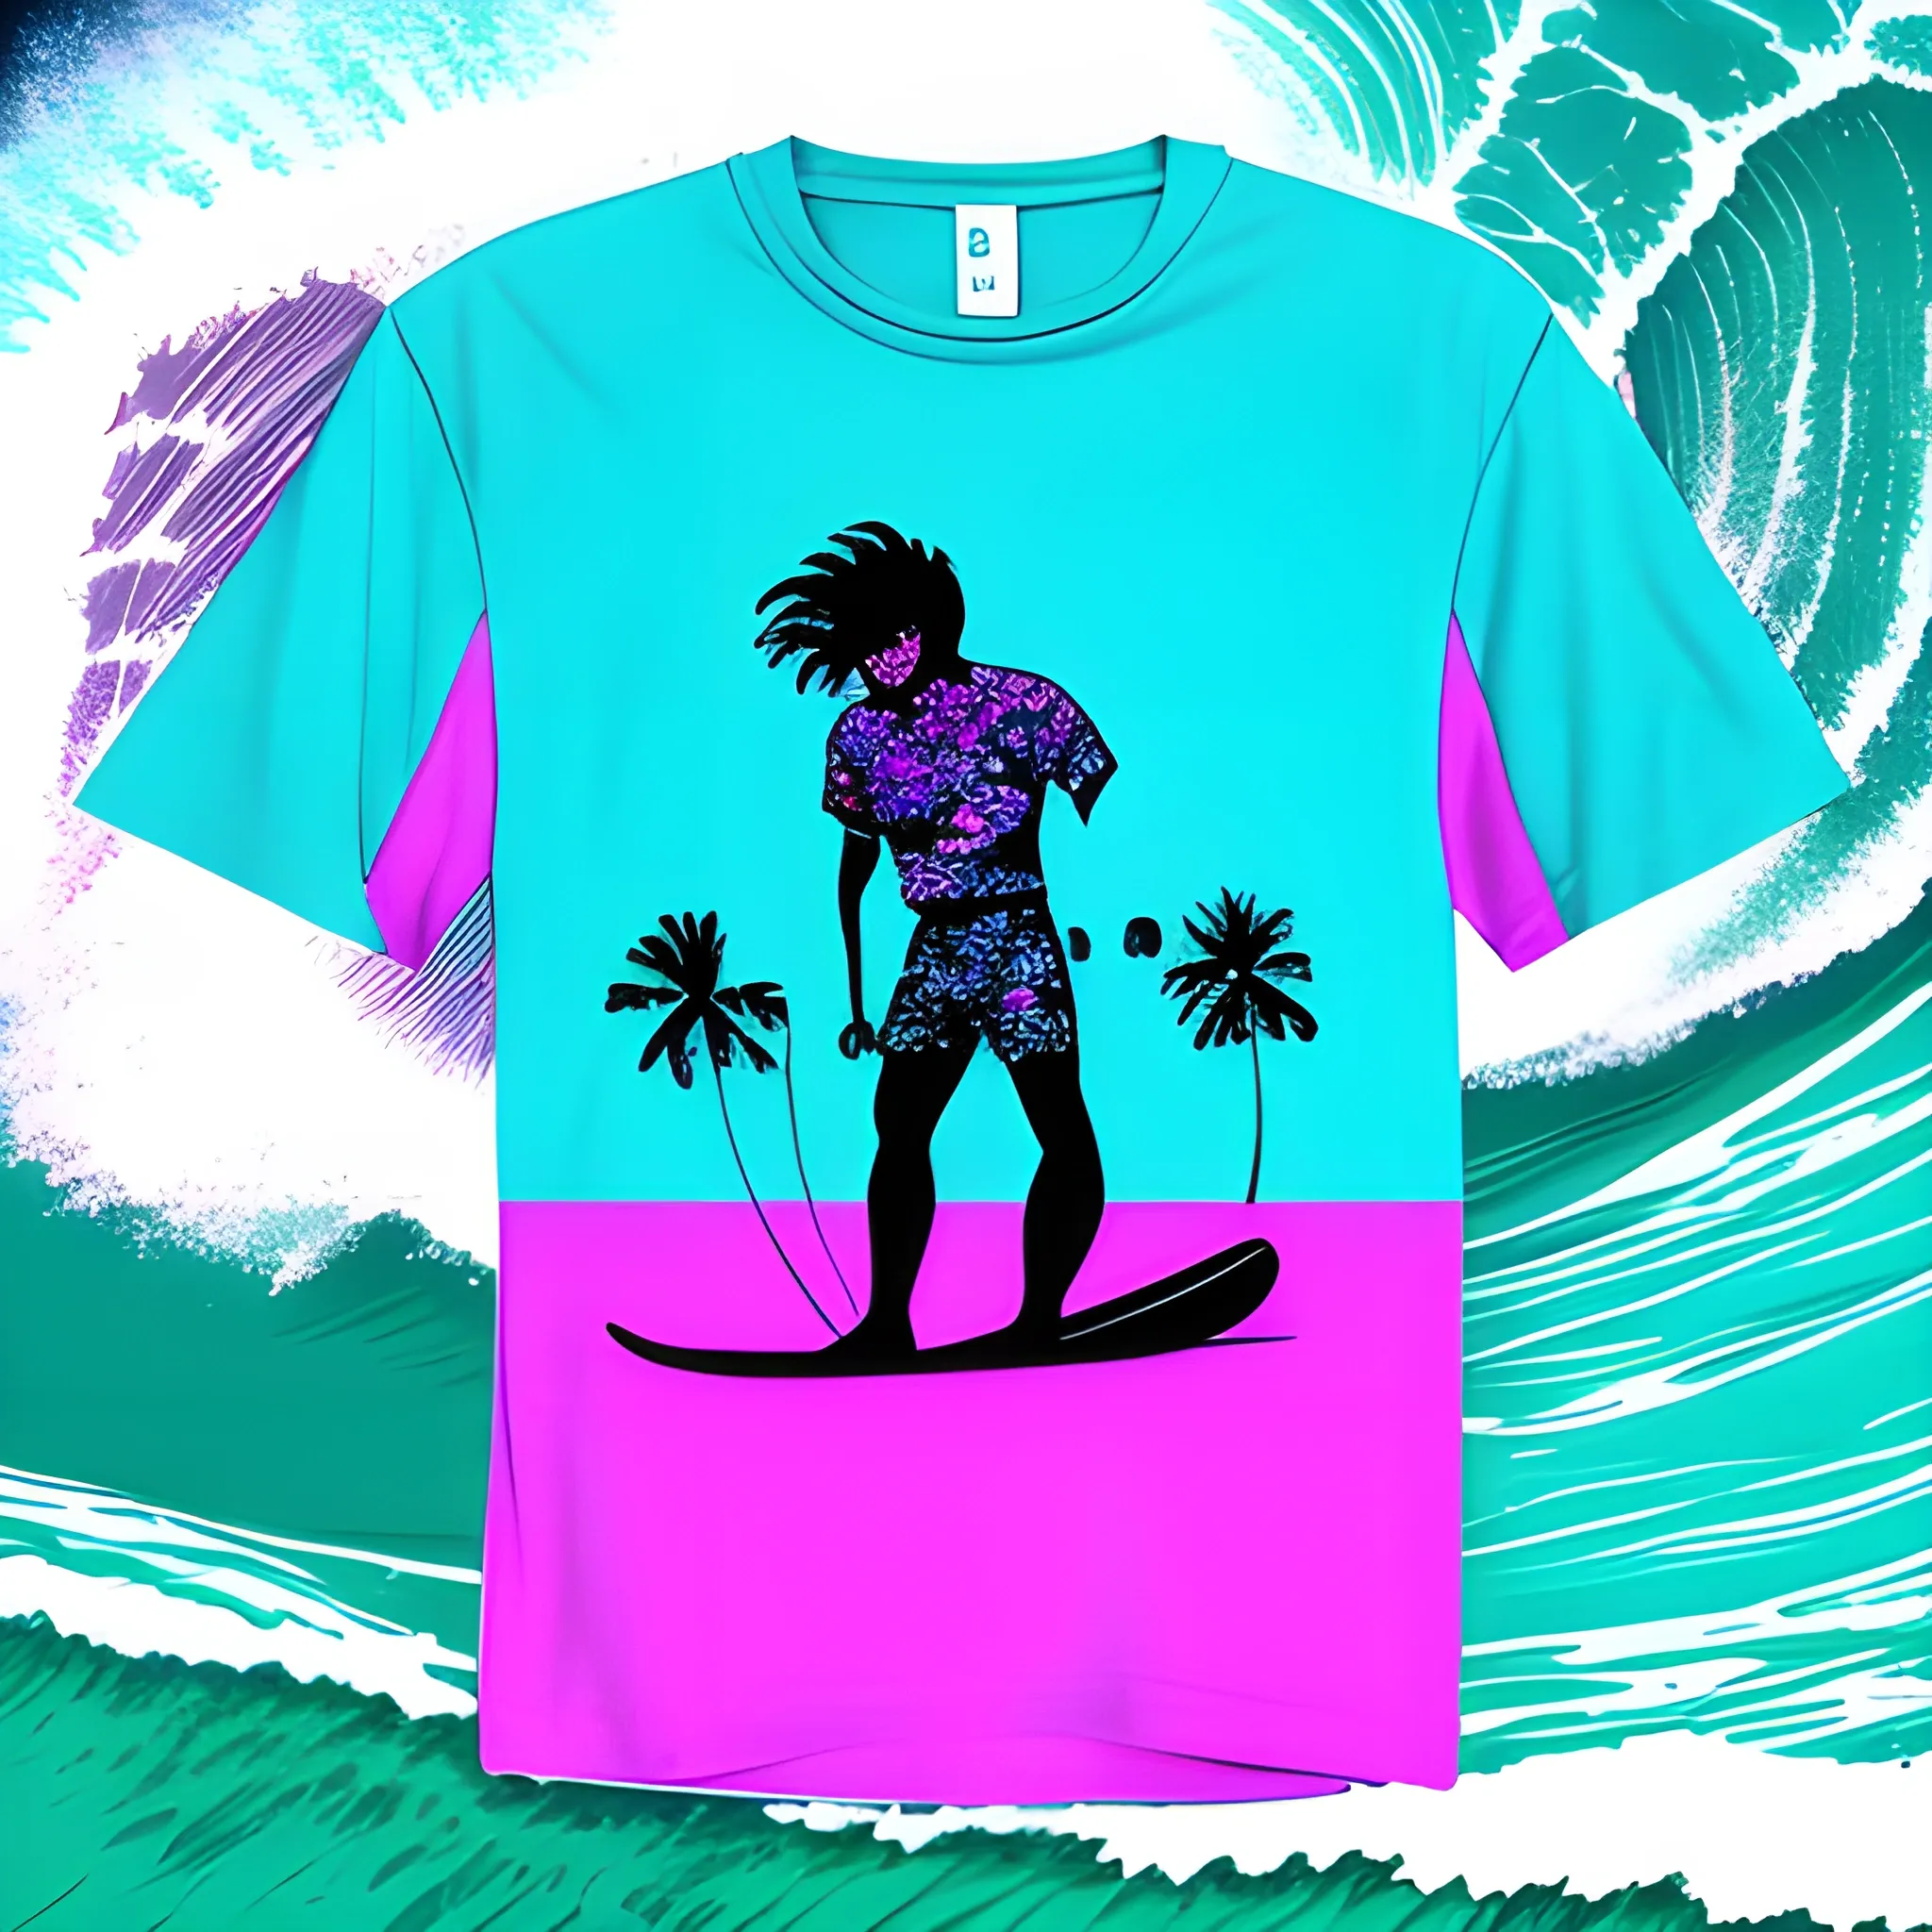 80s surfing shirt logo, Trippy - Arthub.ai